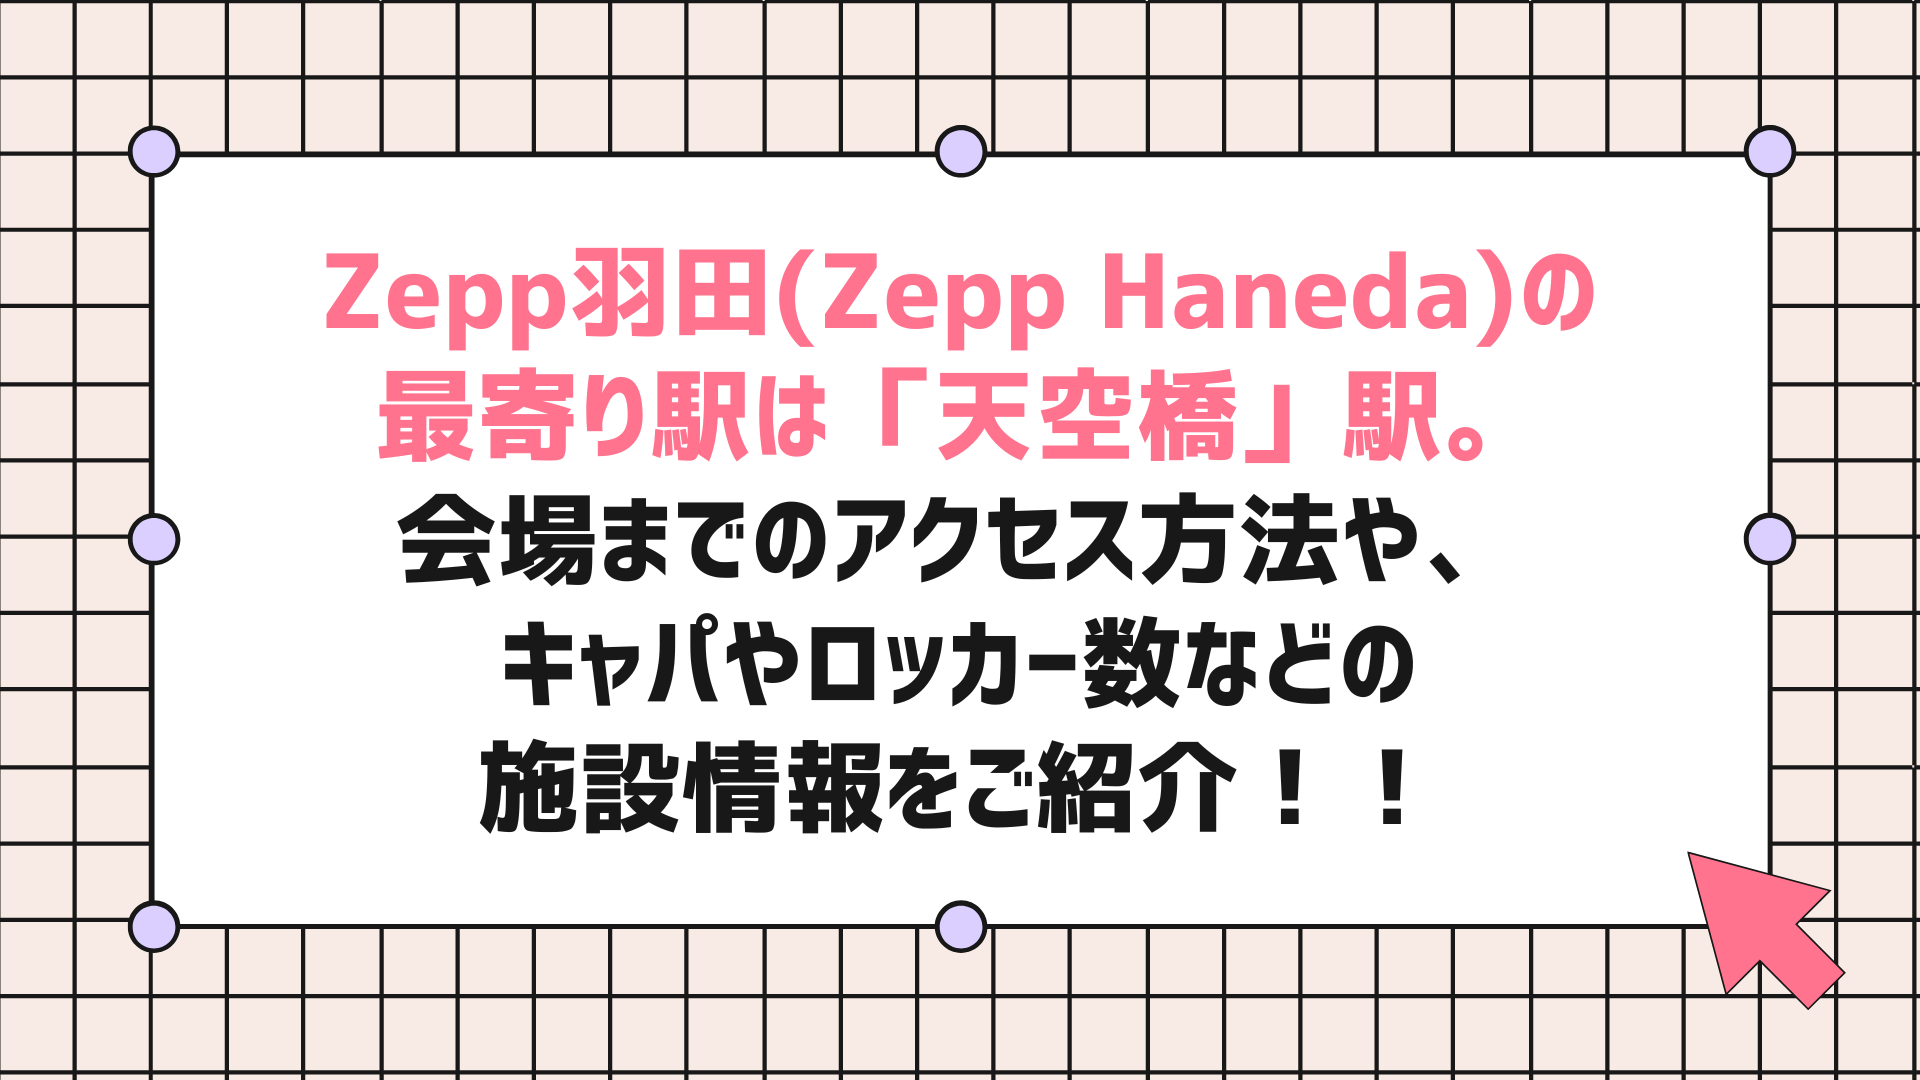 Zepp羽田(Zepp Haneda)の最寄り駅は「天空橋」駅。会場までのアクセス方法や、キャパやロッカー数などの施設情報をご紹介！！